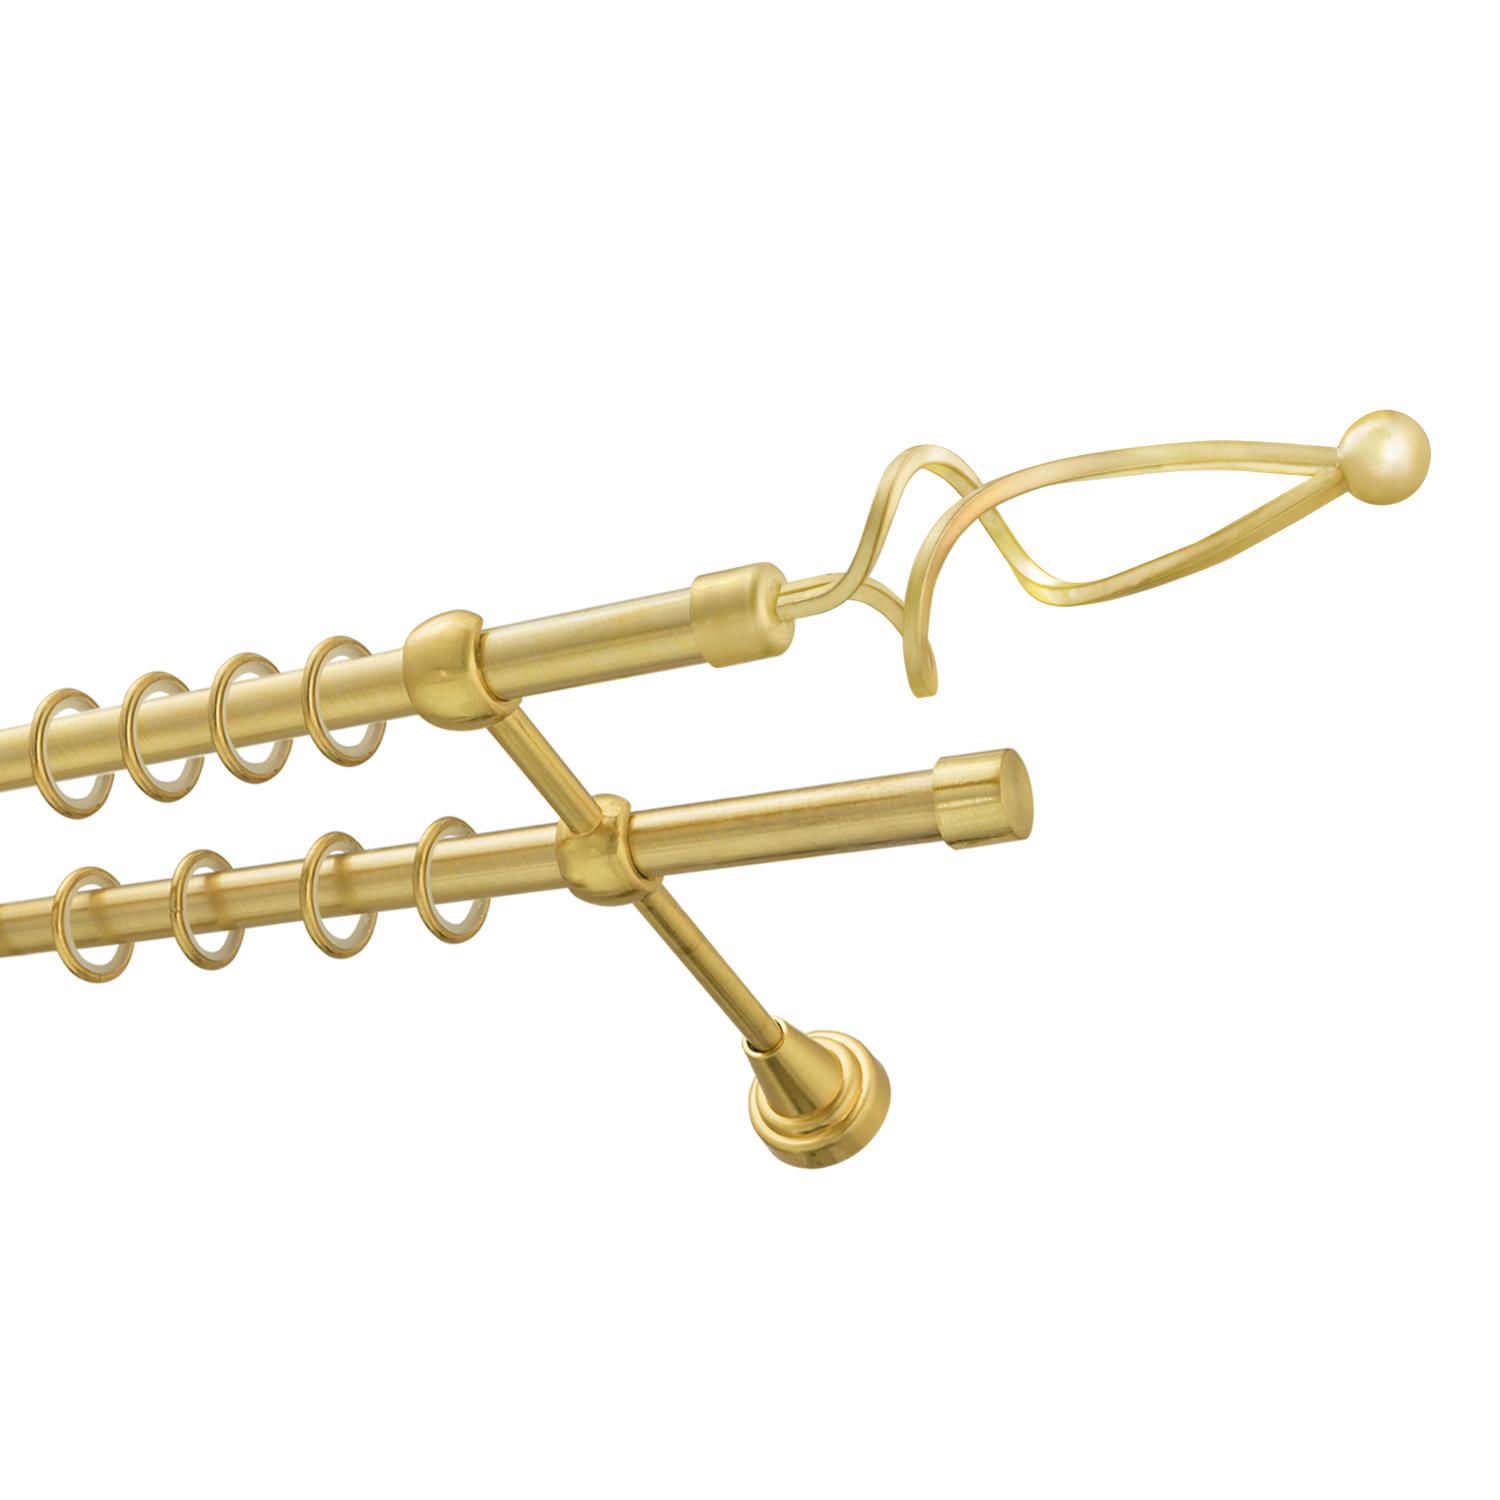 Металлический карниз для штор Жемчужина, двухрядный 16/16 мм, золото, гладкая штанга, длина 160 см - фото Wikidecor.ru